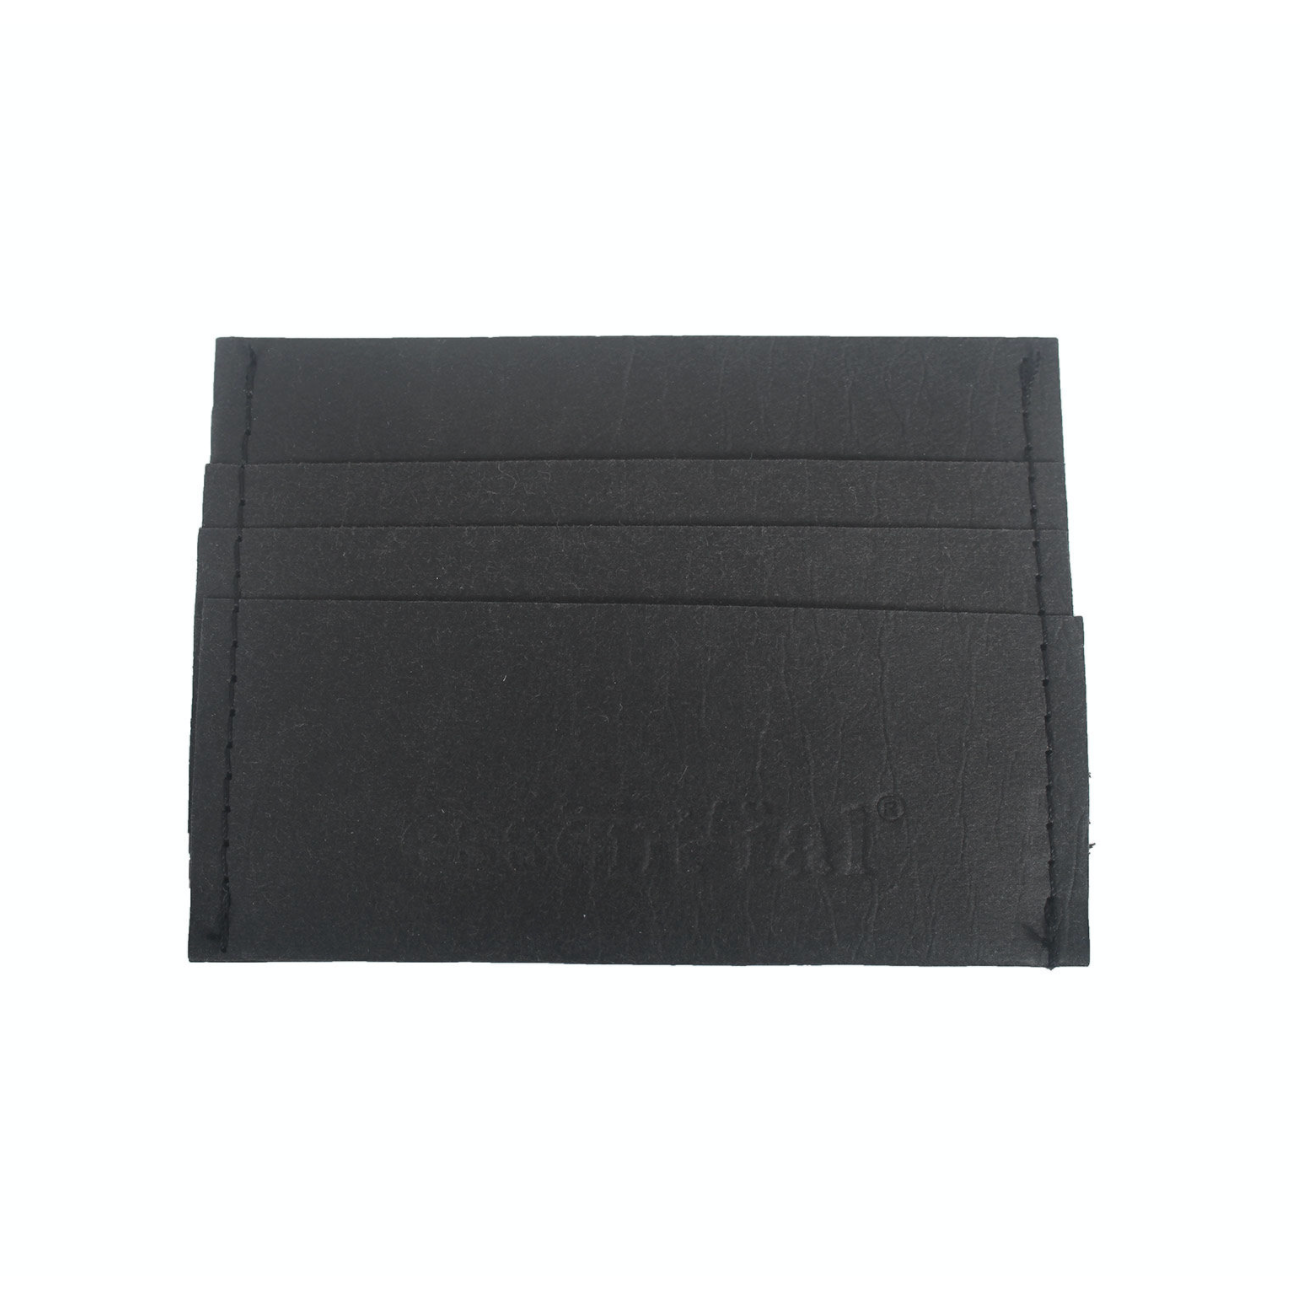 Essent'ial Multi Card Case in Black